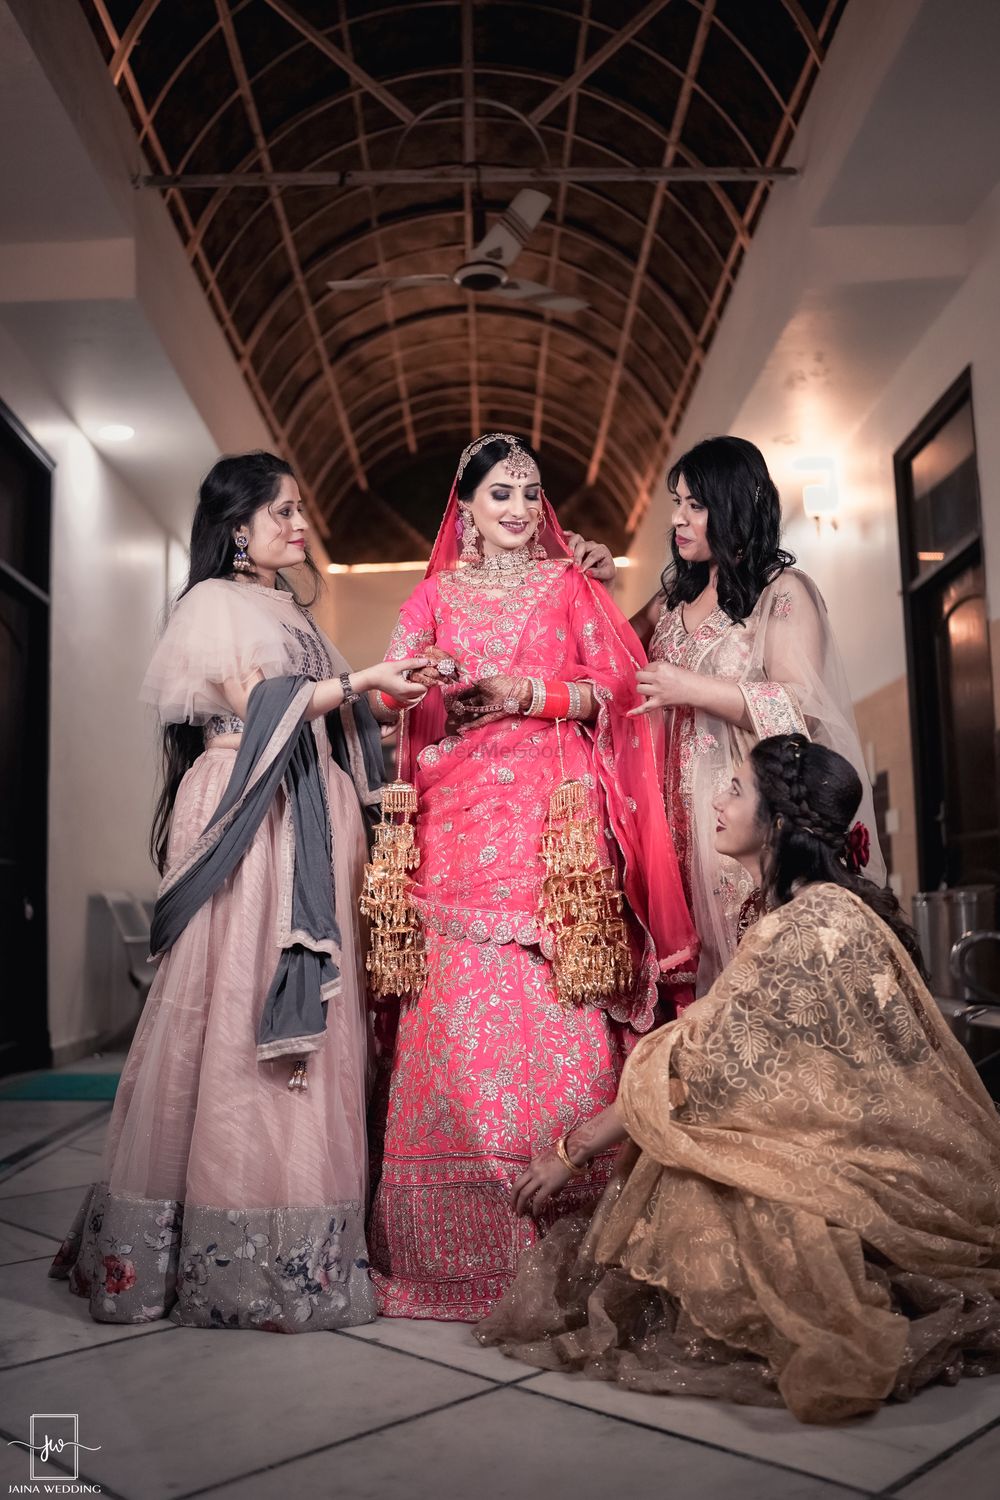 Photo By Jaina Wedding Photography - Photographers